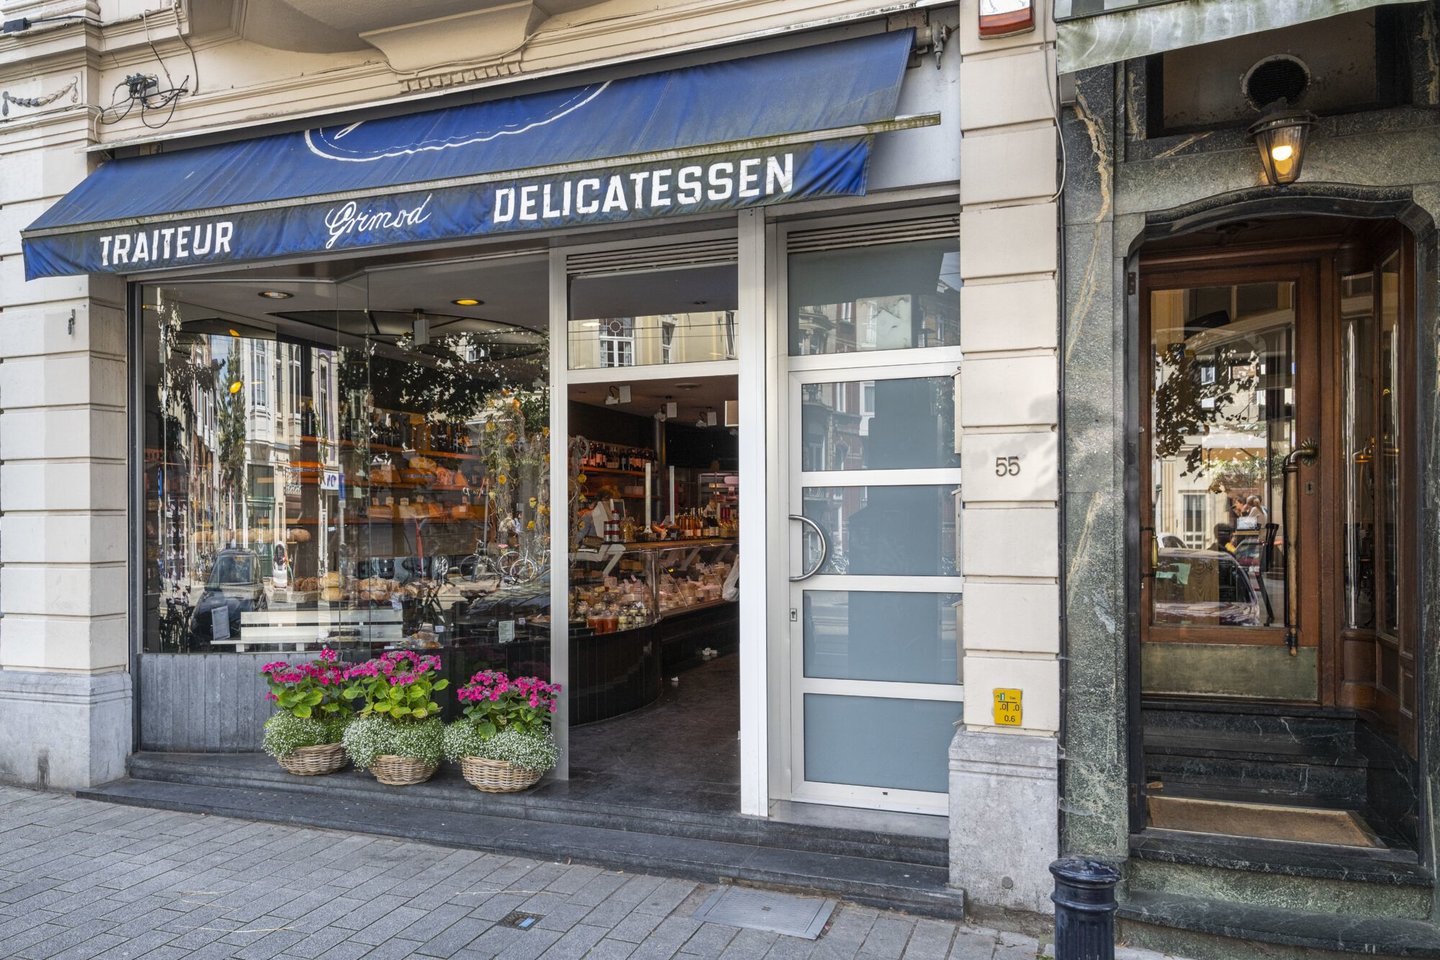 Etalage van Grimod, een winkel van bereide maaltijden & delicatessen in Gent